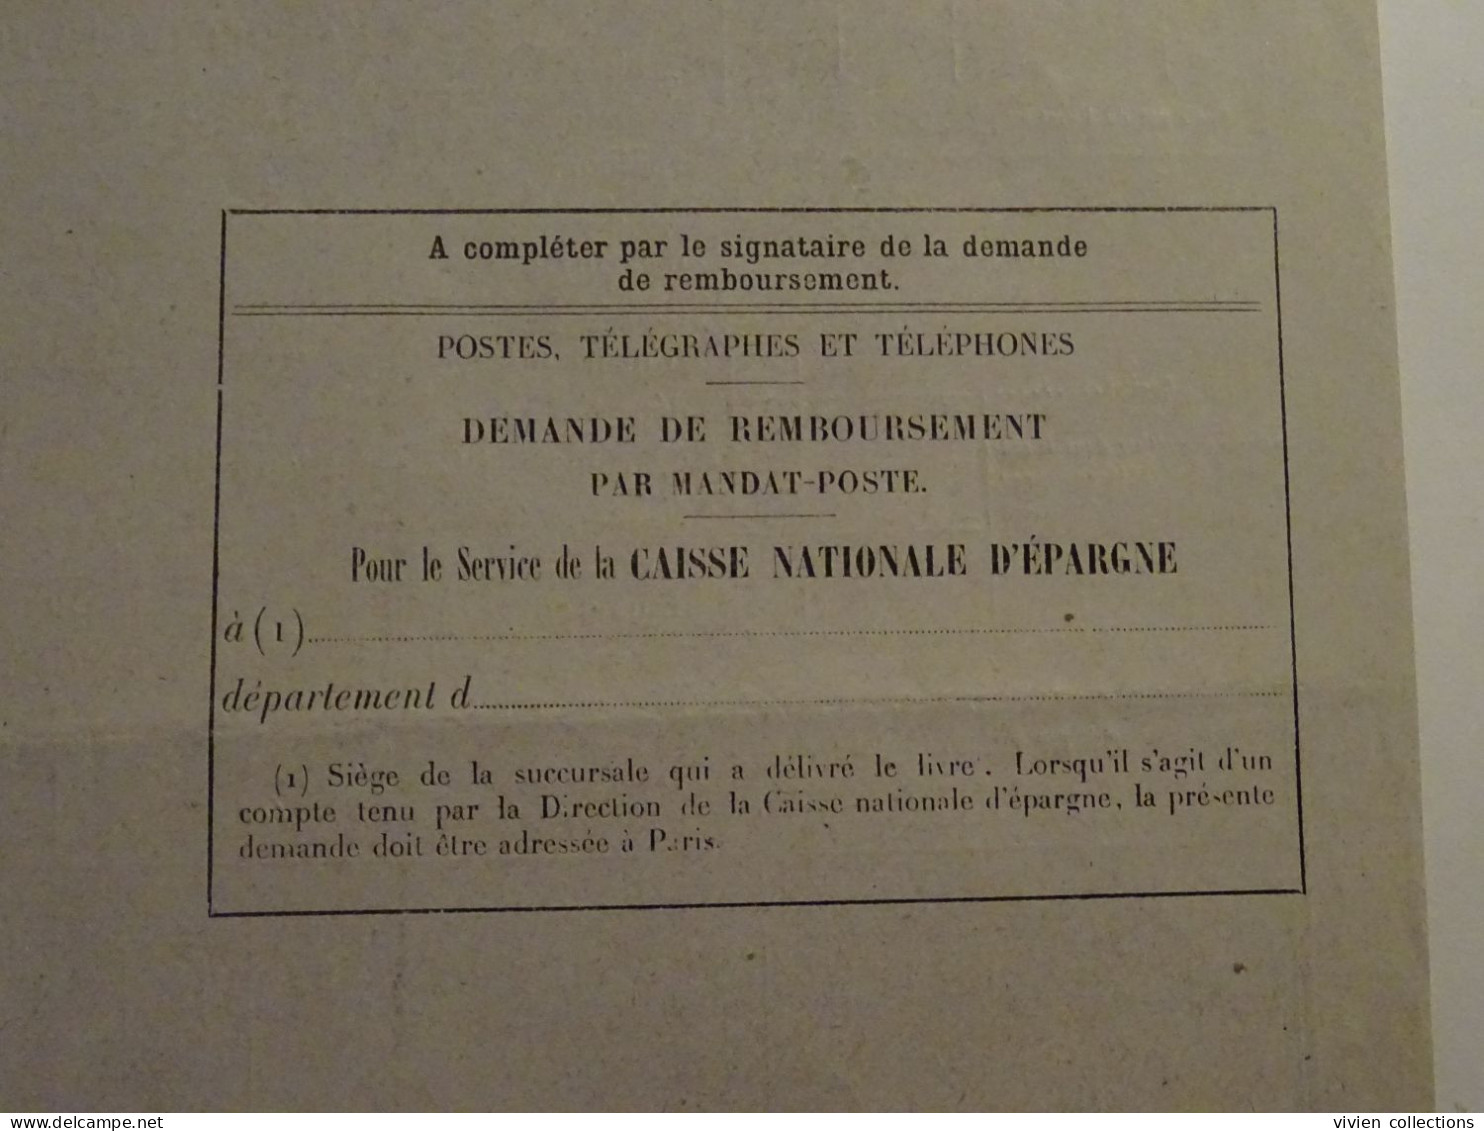 France cours pratique d'instruction Orléans 1954 demande et remboursement par mandat ébéniste pour La Baule et Montargis